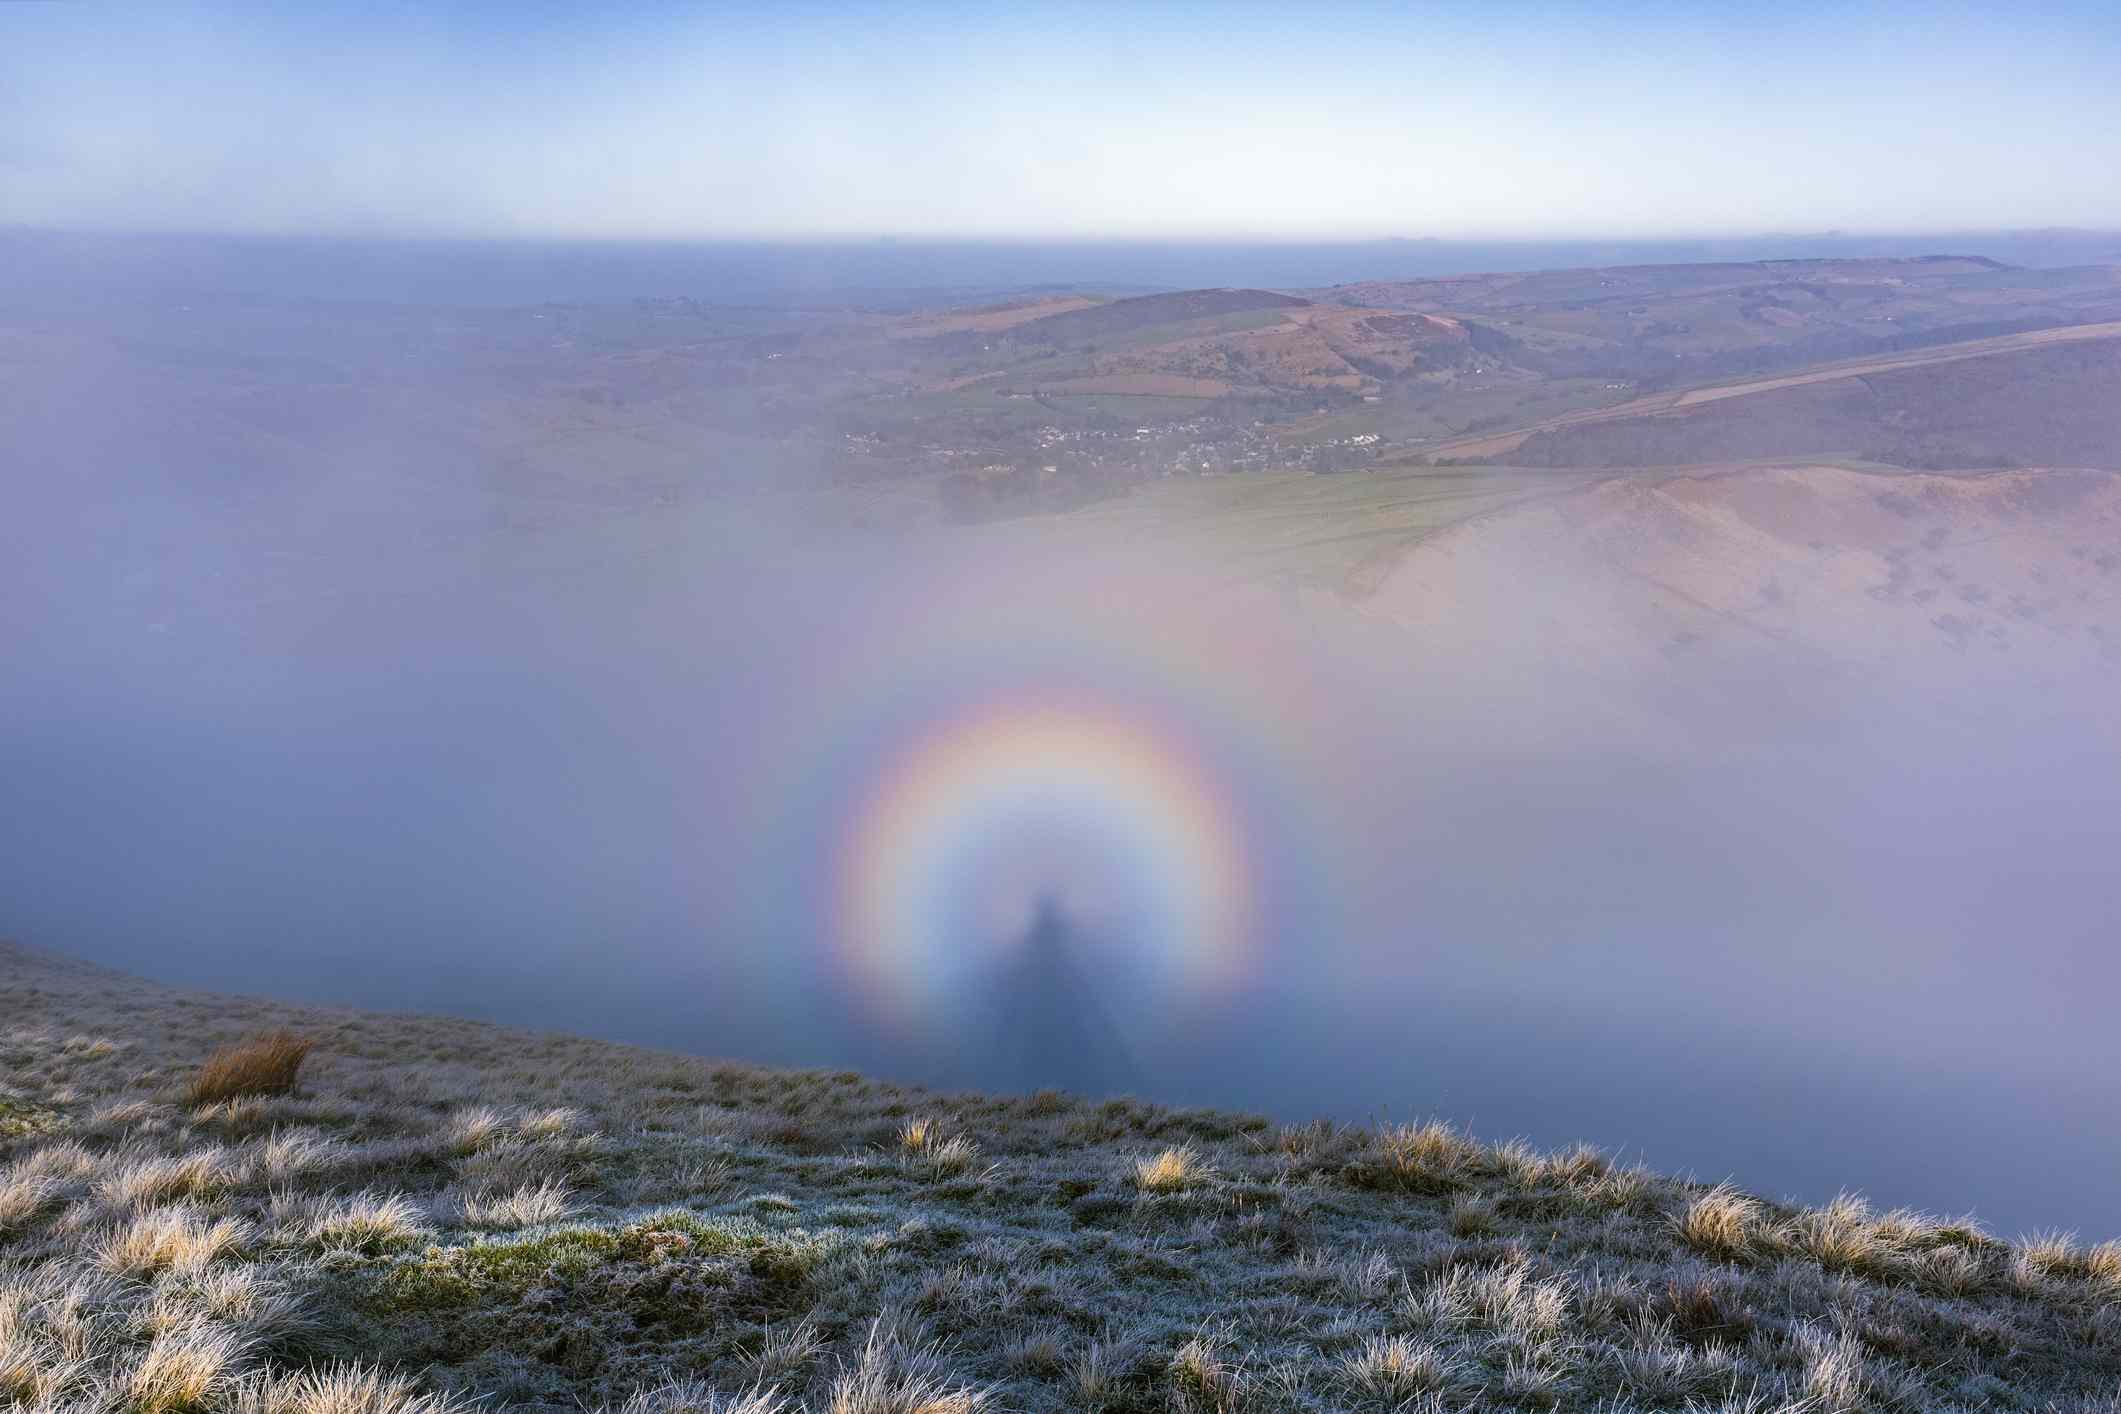 一个观察者被放大的影子投射在太阳对面的云层上，被称为“布罗肯幽灵”，看起来像一个人被彩虹包围着，上面有山脉和蓝白色的天空